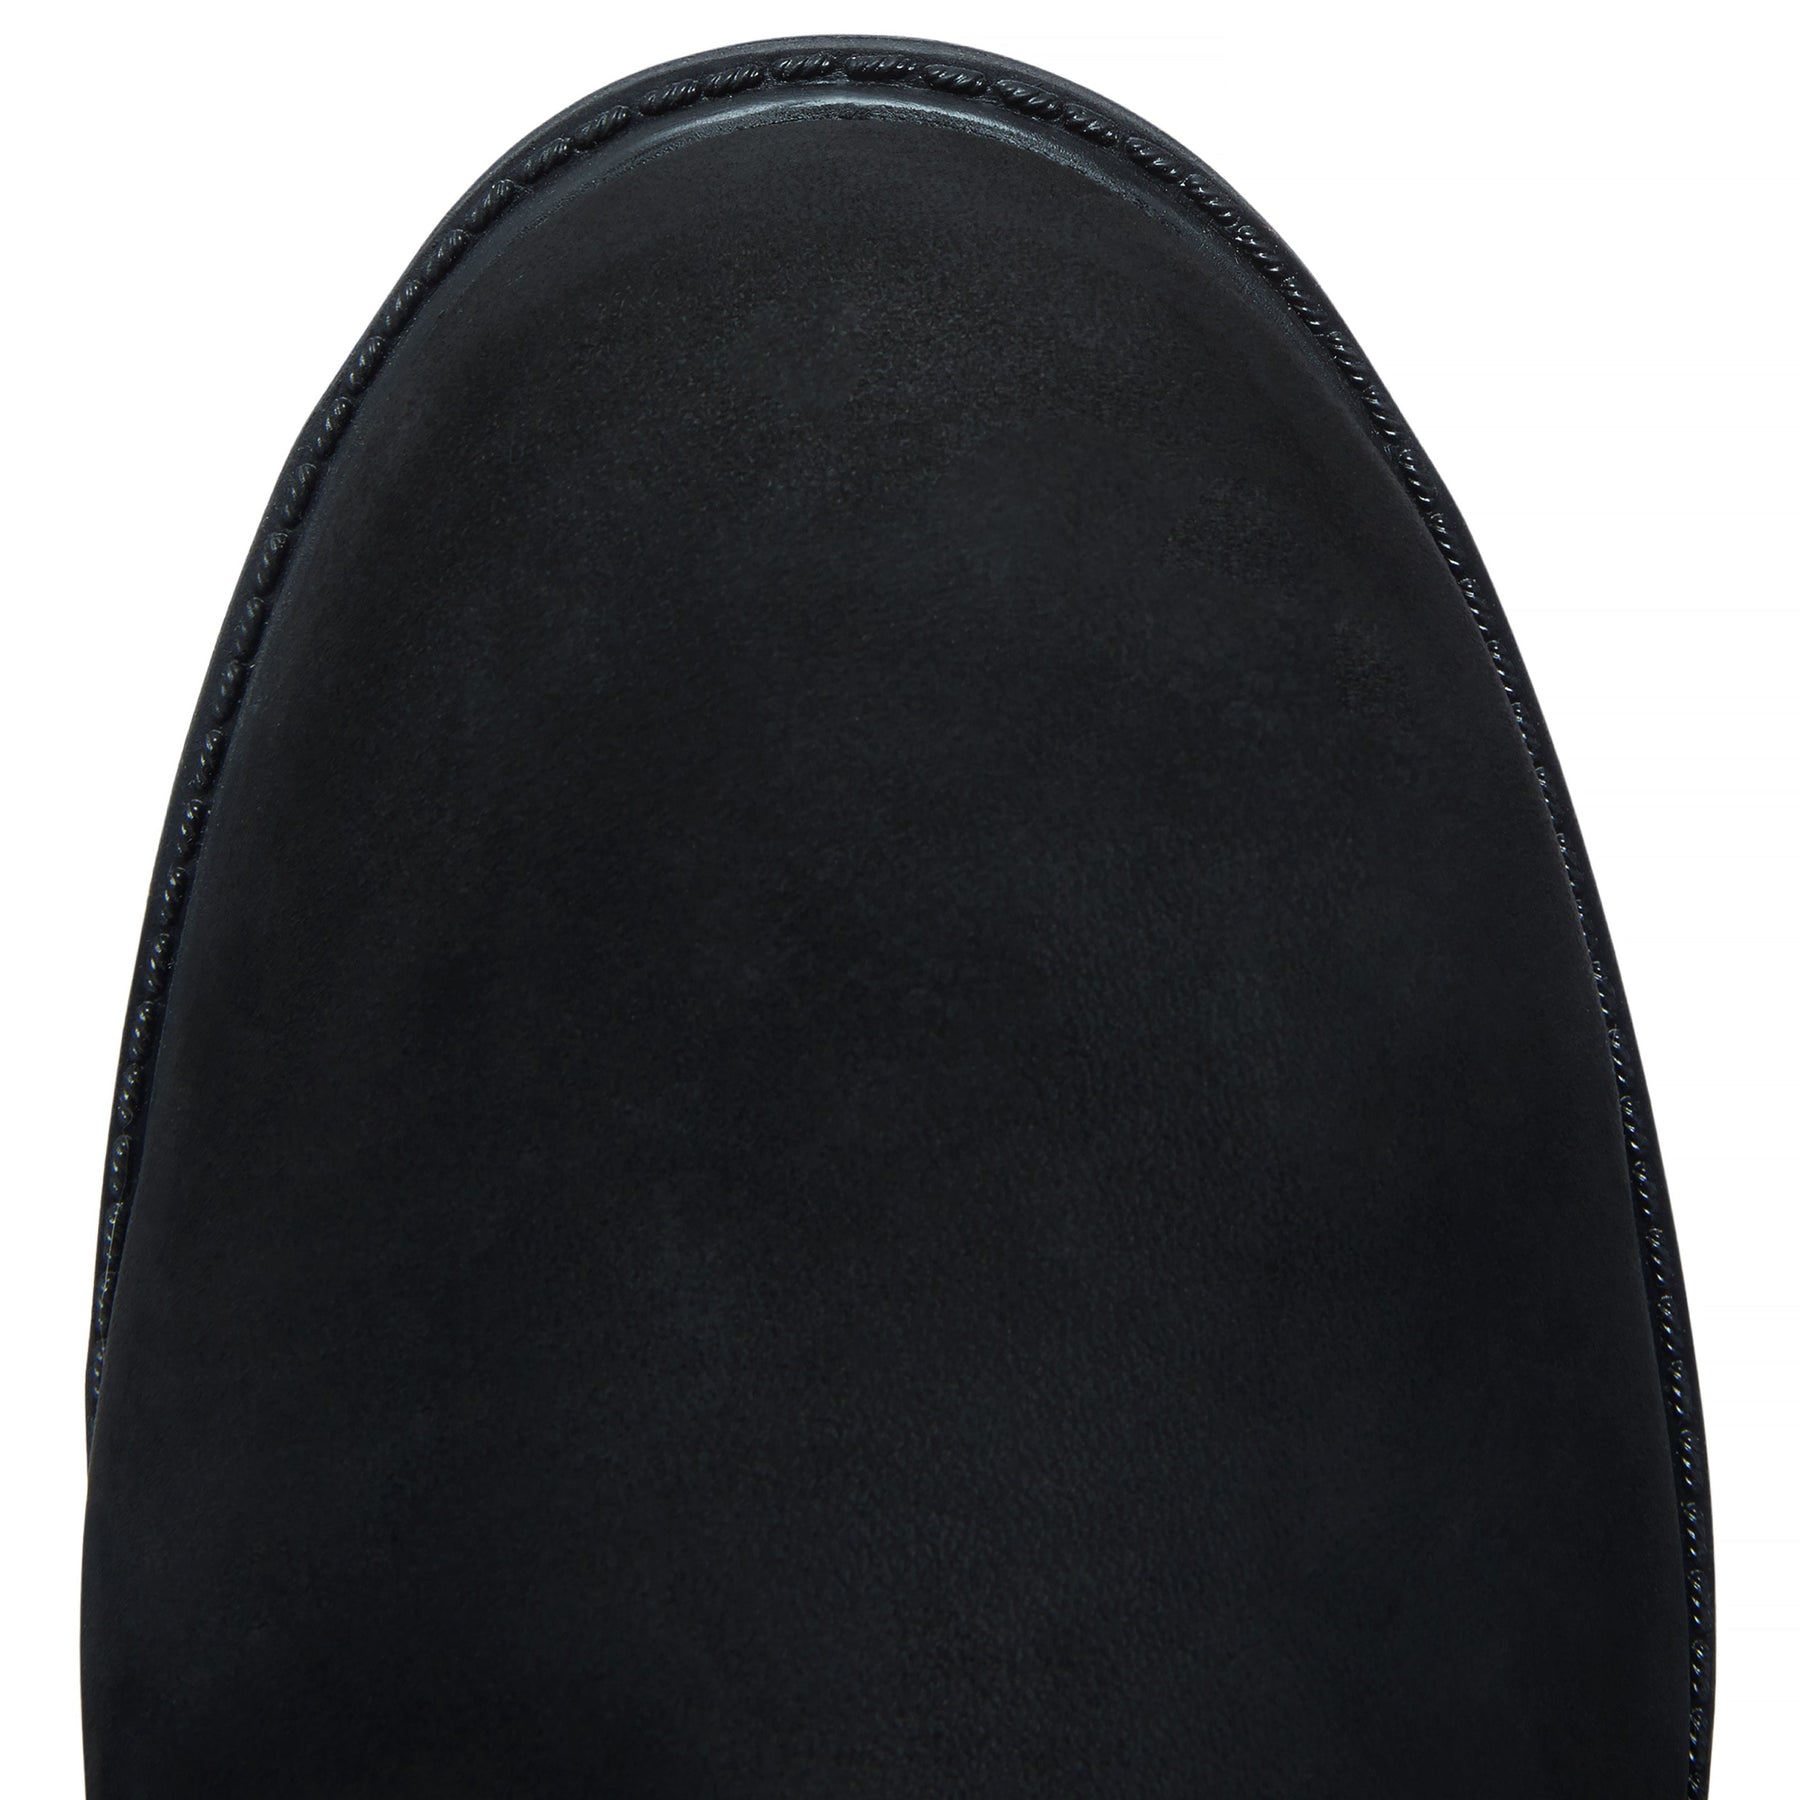 Timberland 6 Inch Premium Boot - Black